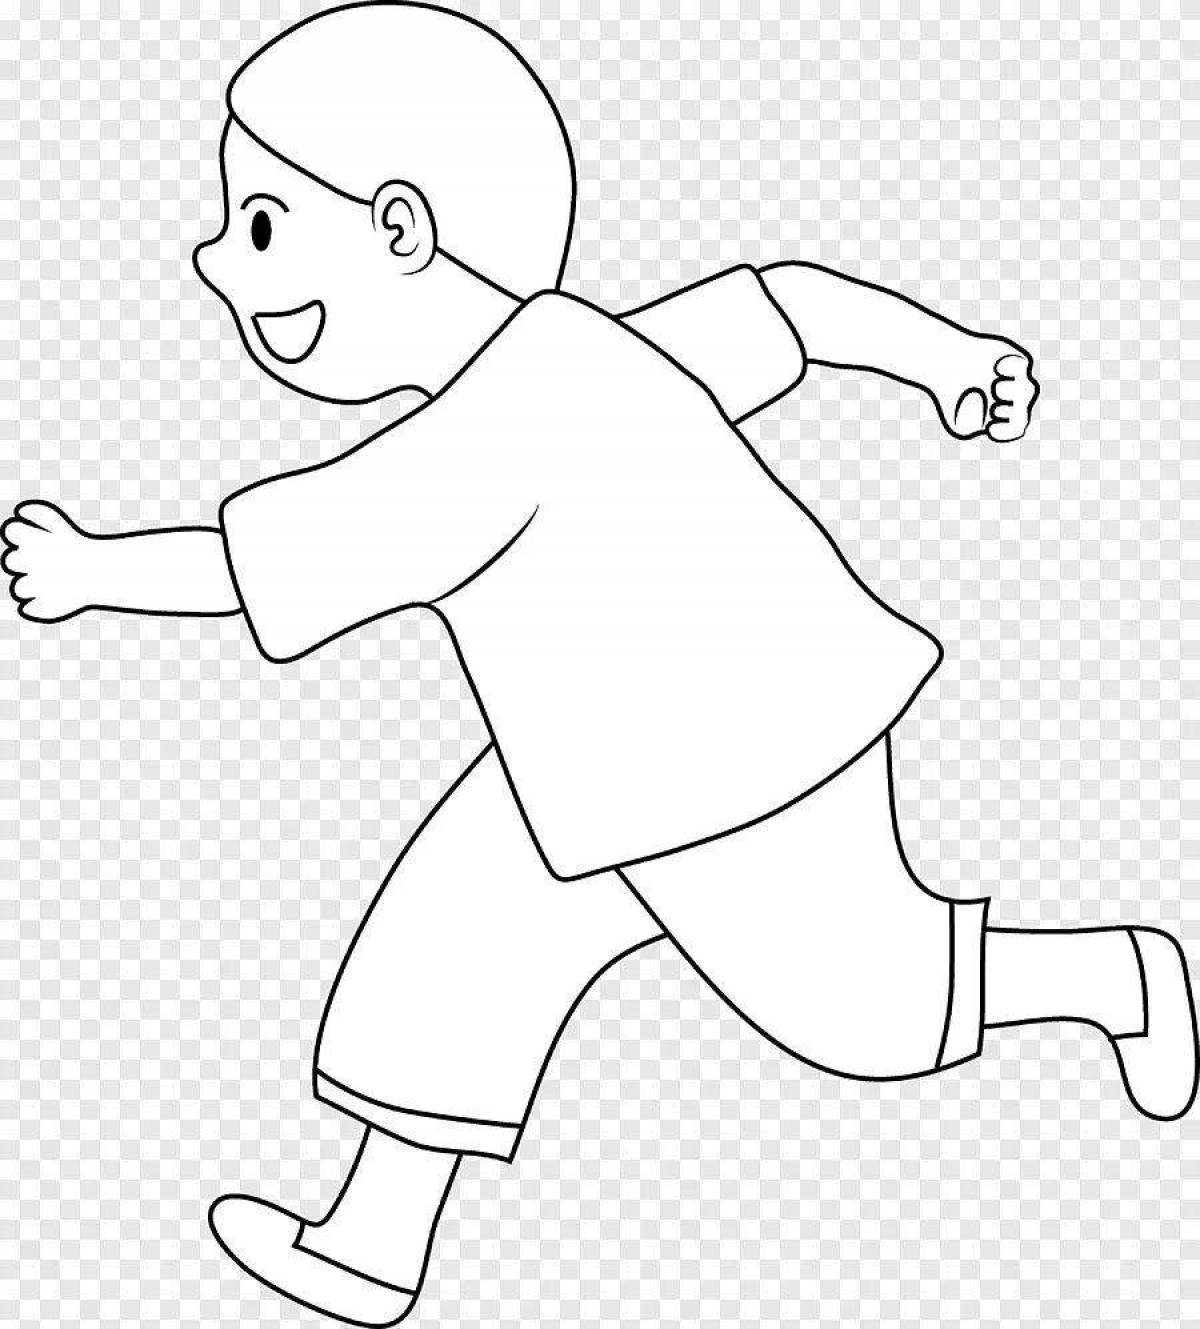 Joyful run coloring page